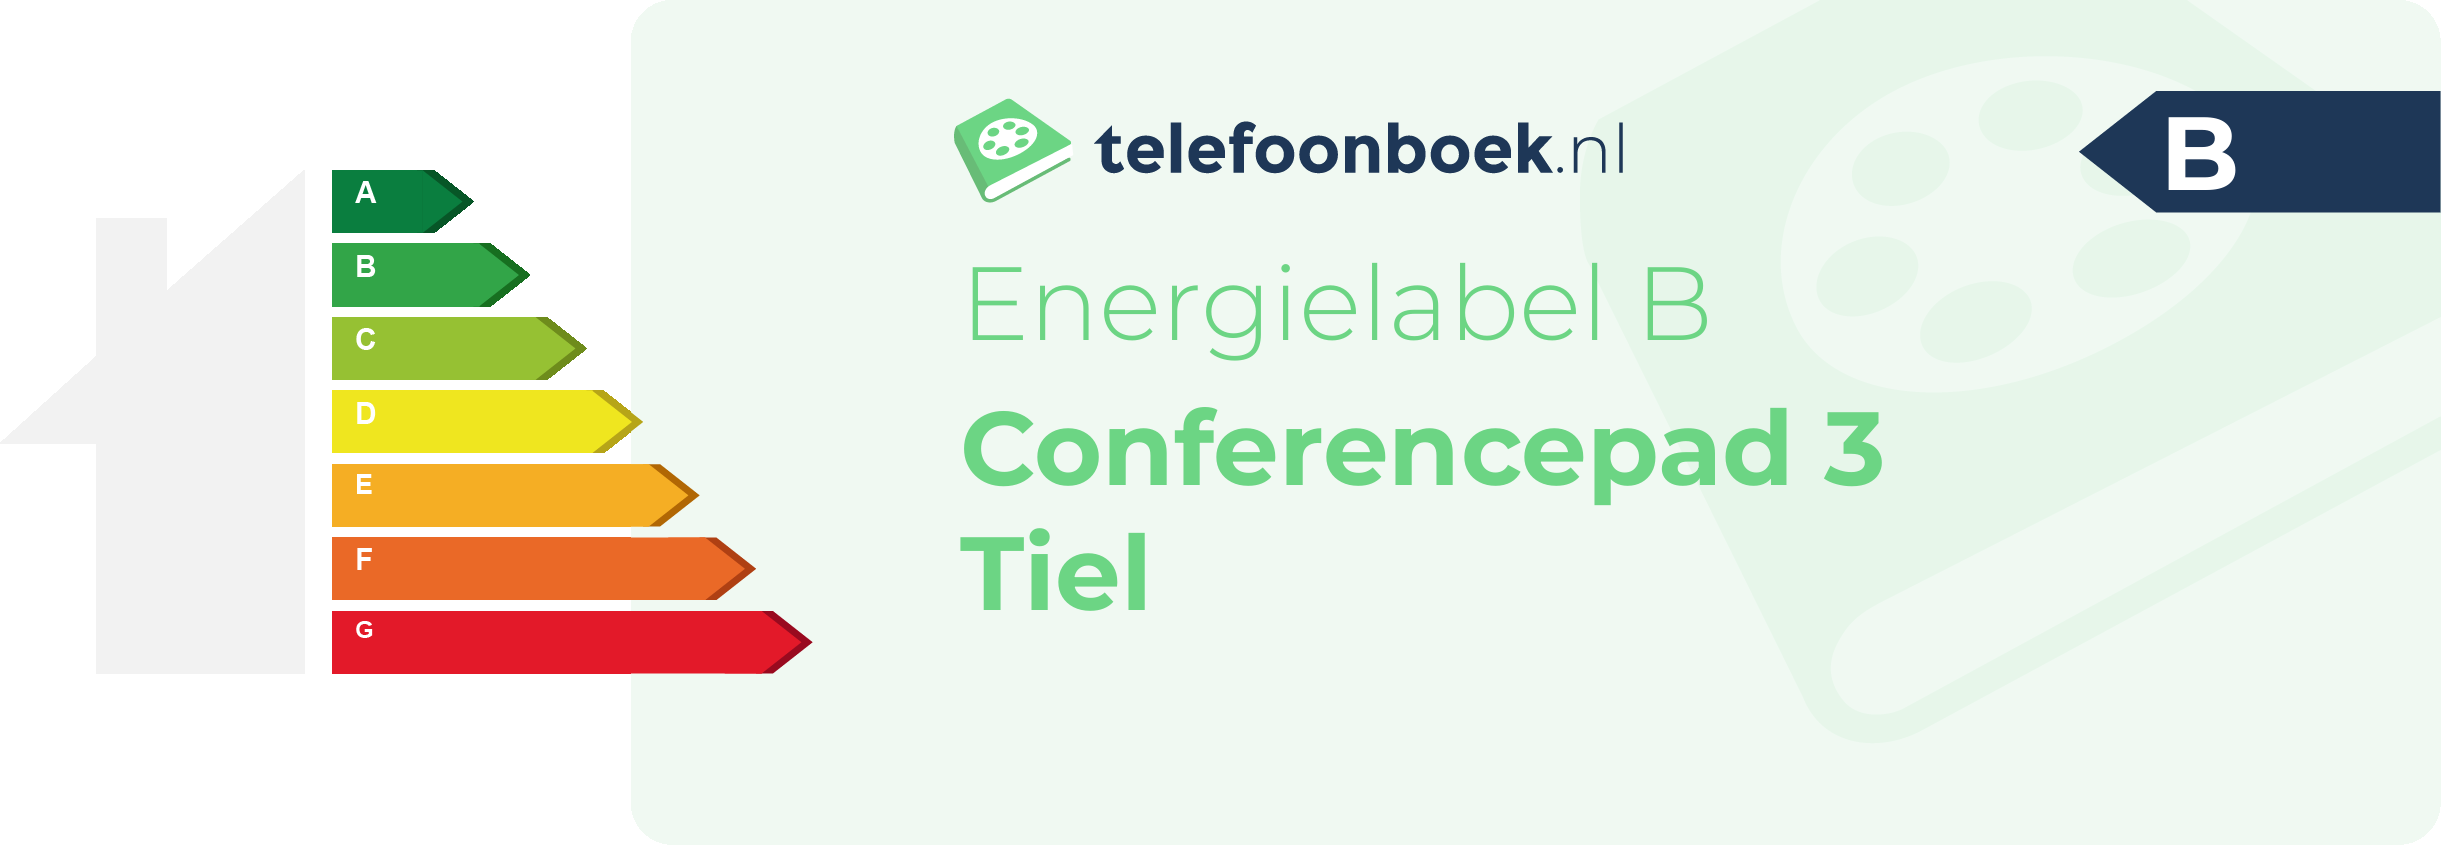 Energielabel Conferencepad 3 Tiel